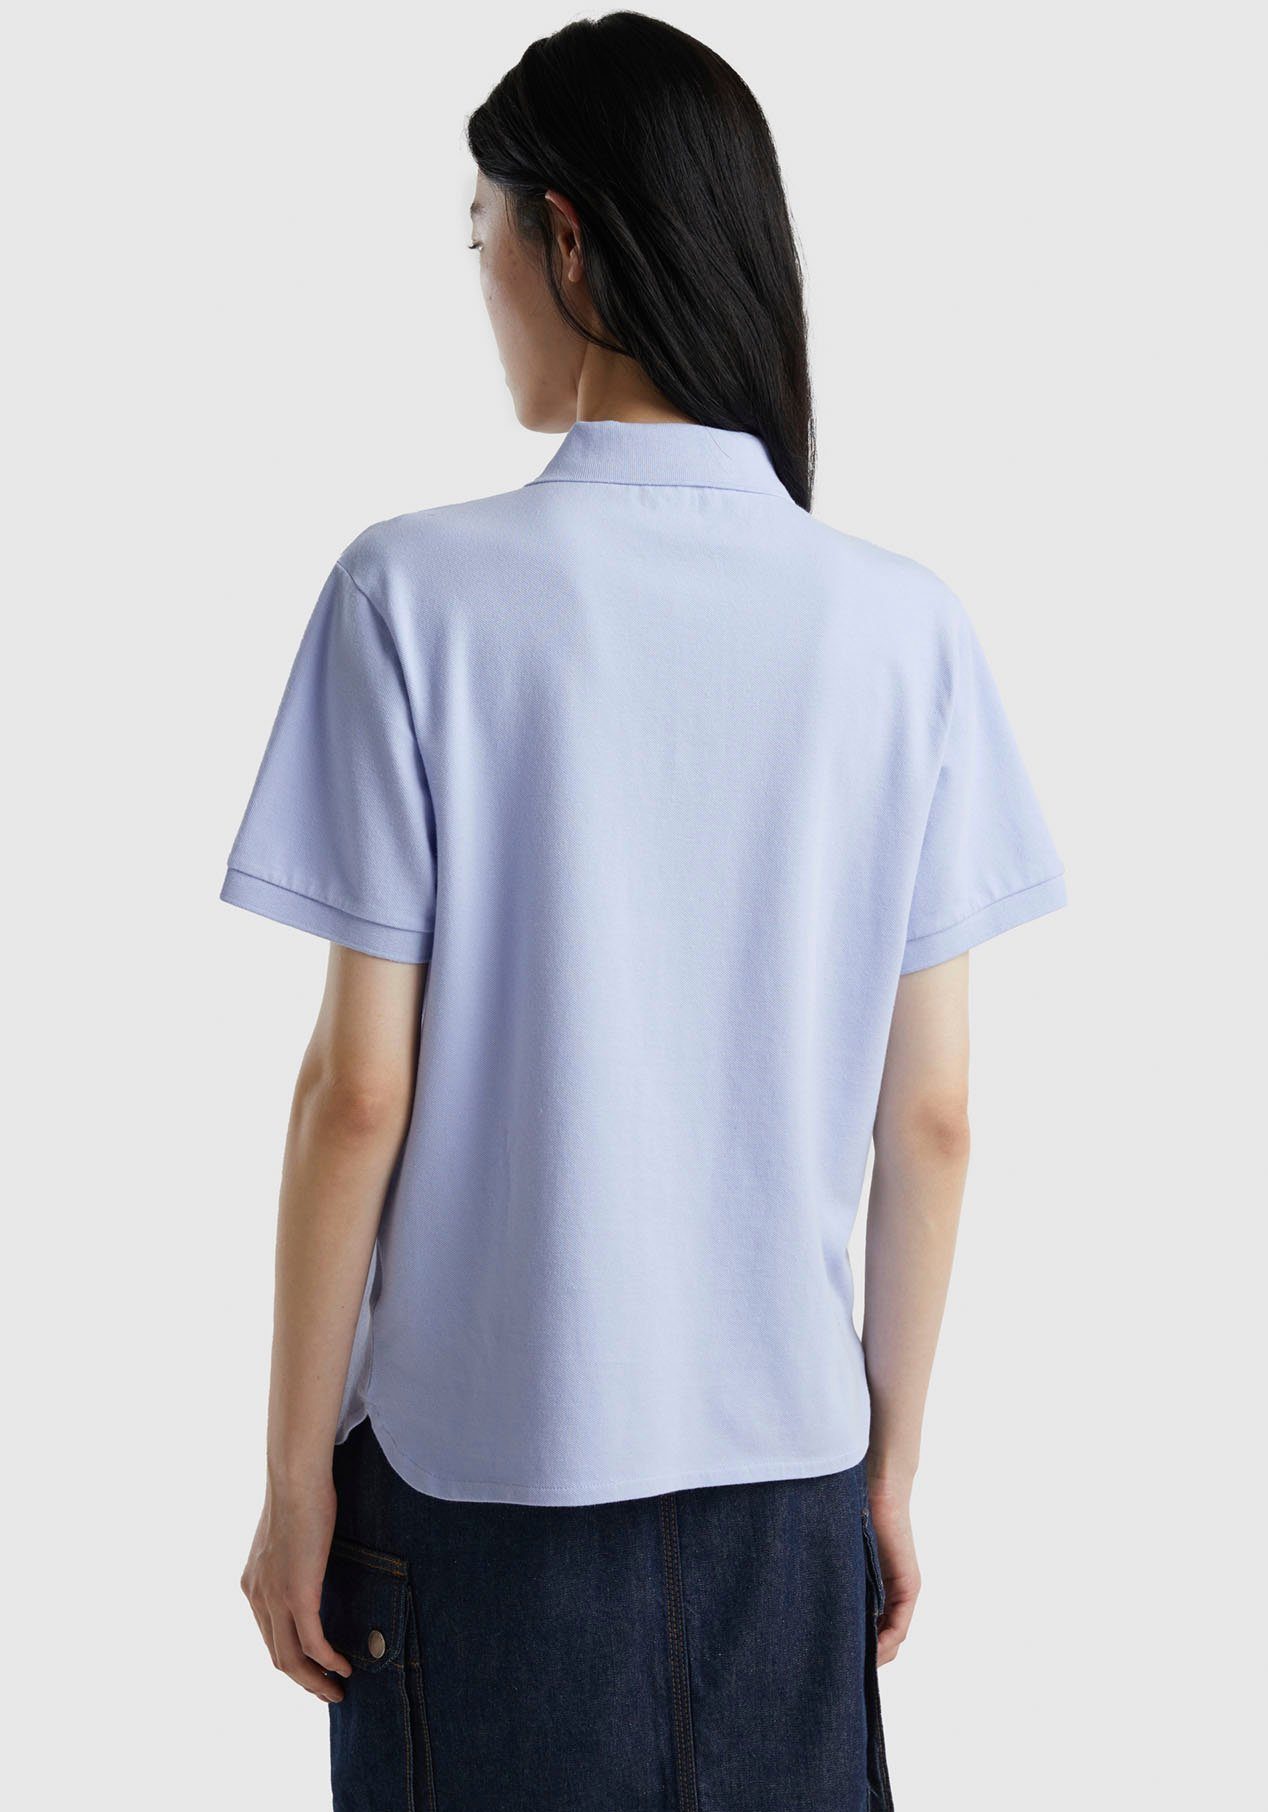 Knöpfen United perlmuttfarbenen Poloshirt mit of Benetton hellblau Colors